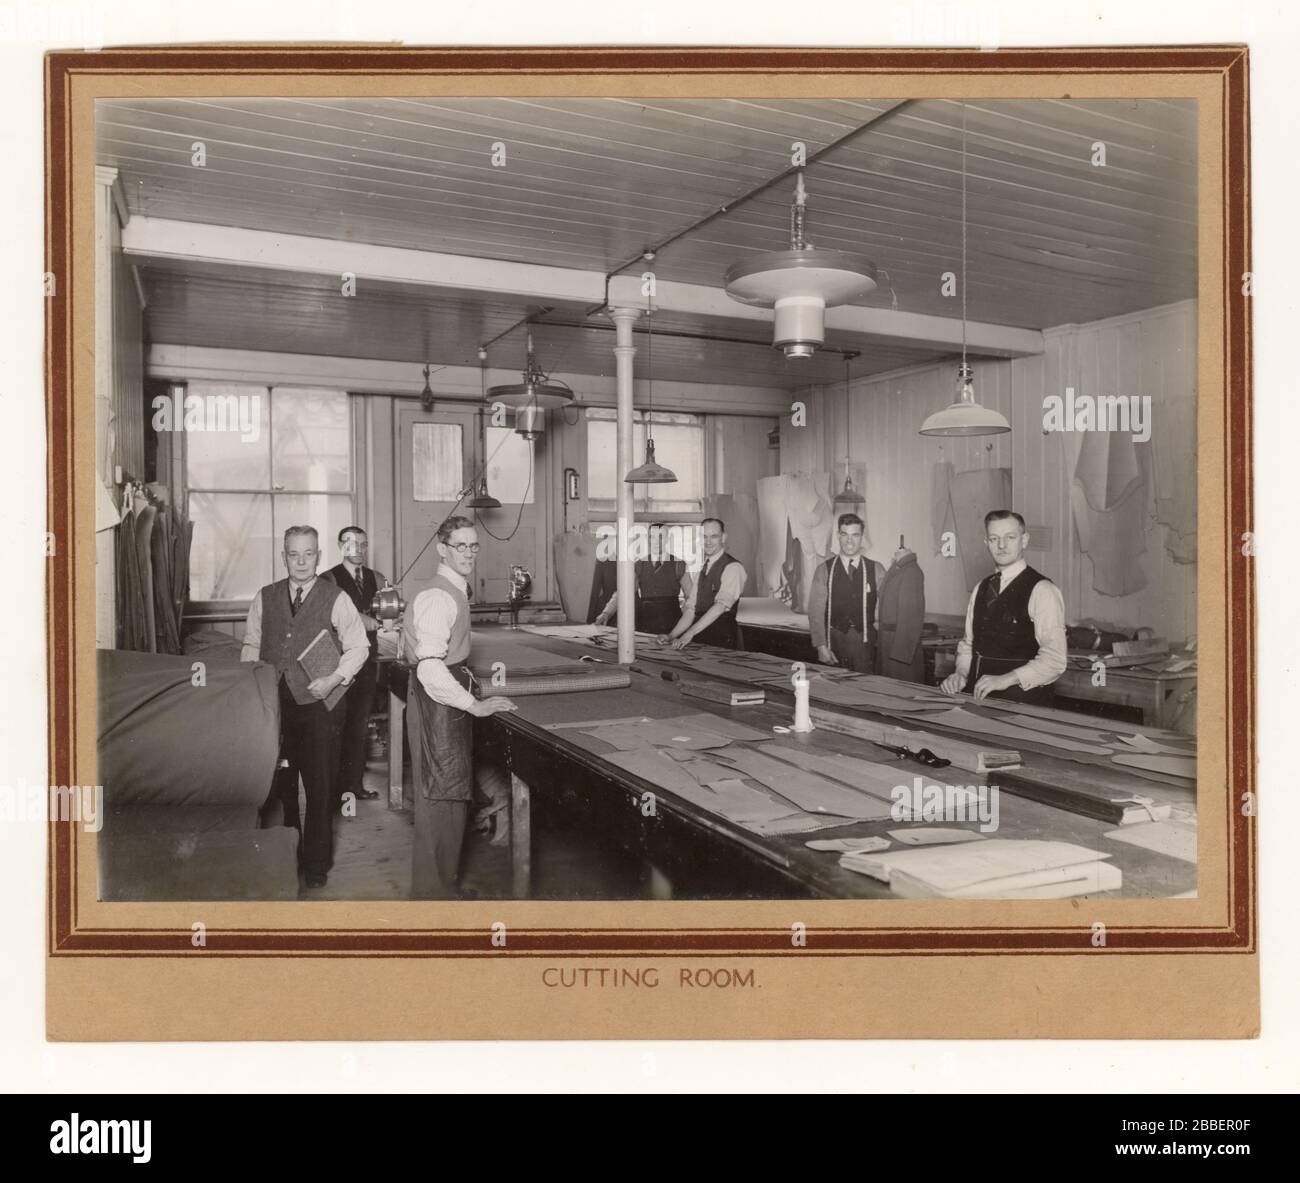 Originale inizio del 1900 's foto di uomini al lavoro nella sala da taglio di una ditta di abbigliamento, utilizzando modelli, la realizzazione di abiti in lana da tweed, circa anni '30 '40, probabilmente Norwich, Inghilterra, Regno Unito Foto Stock